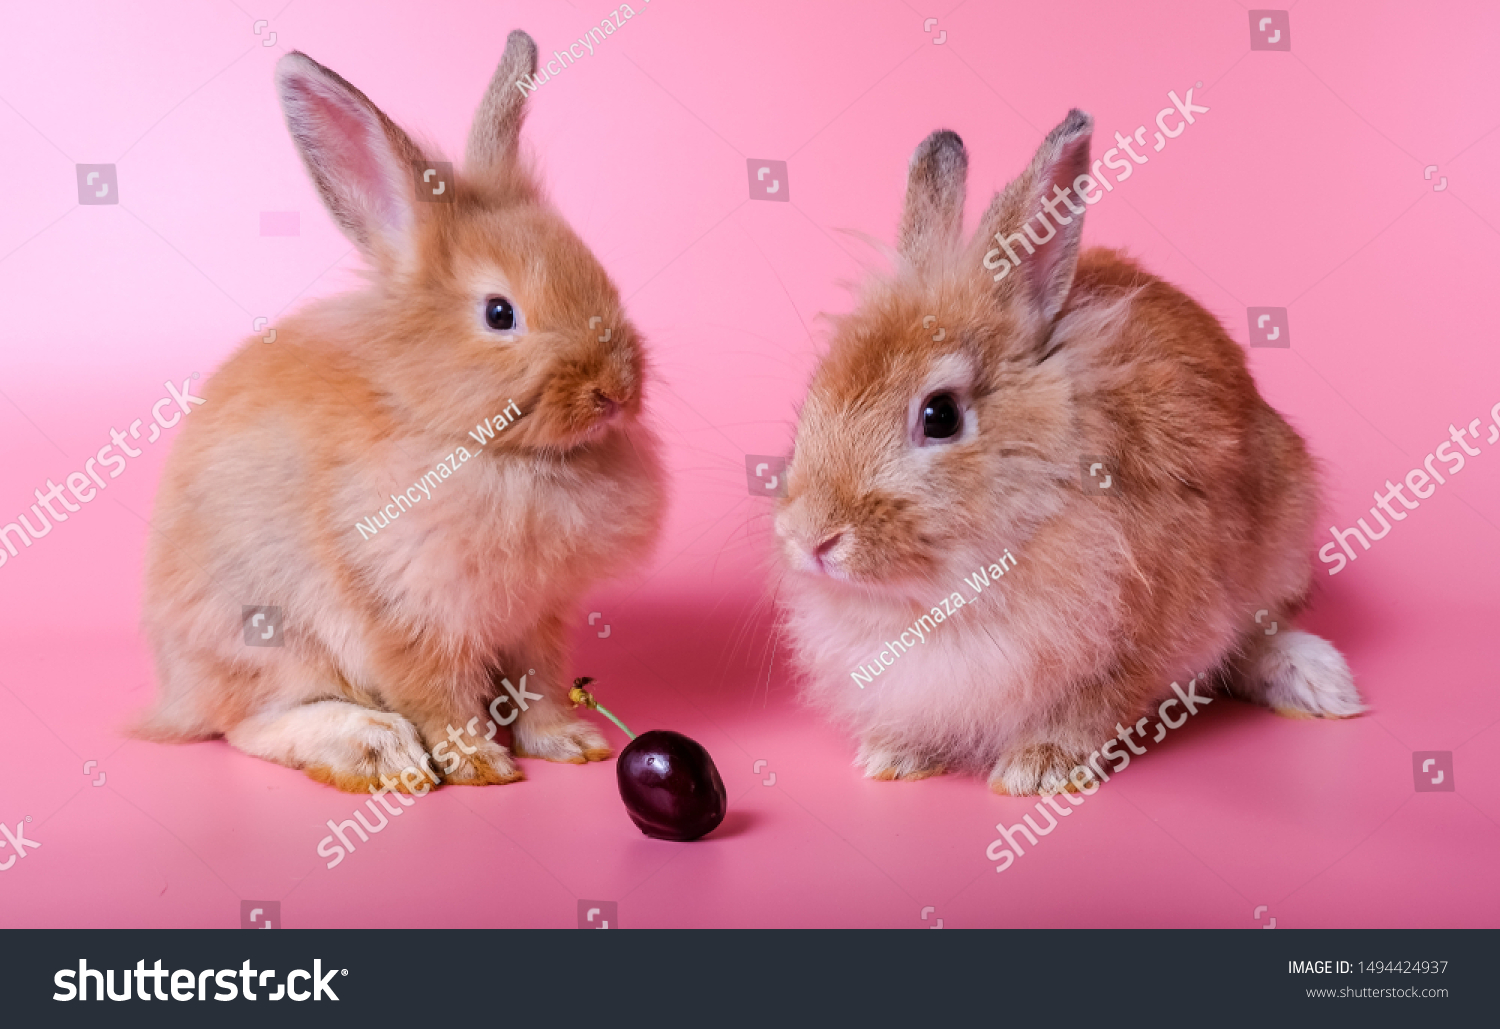 fluffy baby rabbits